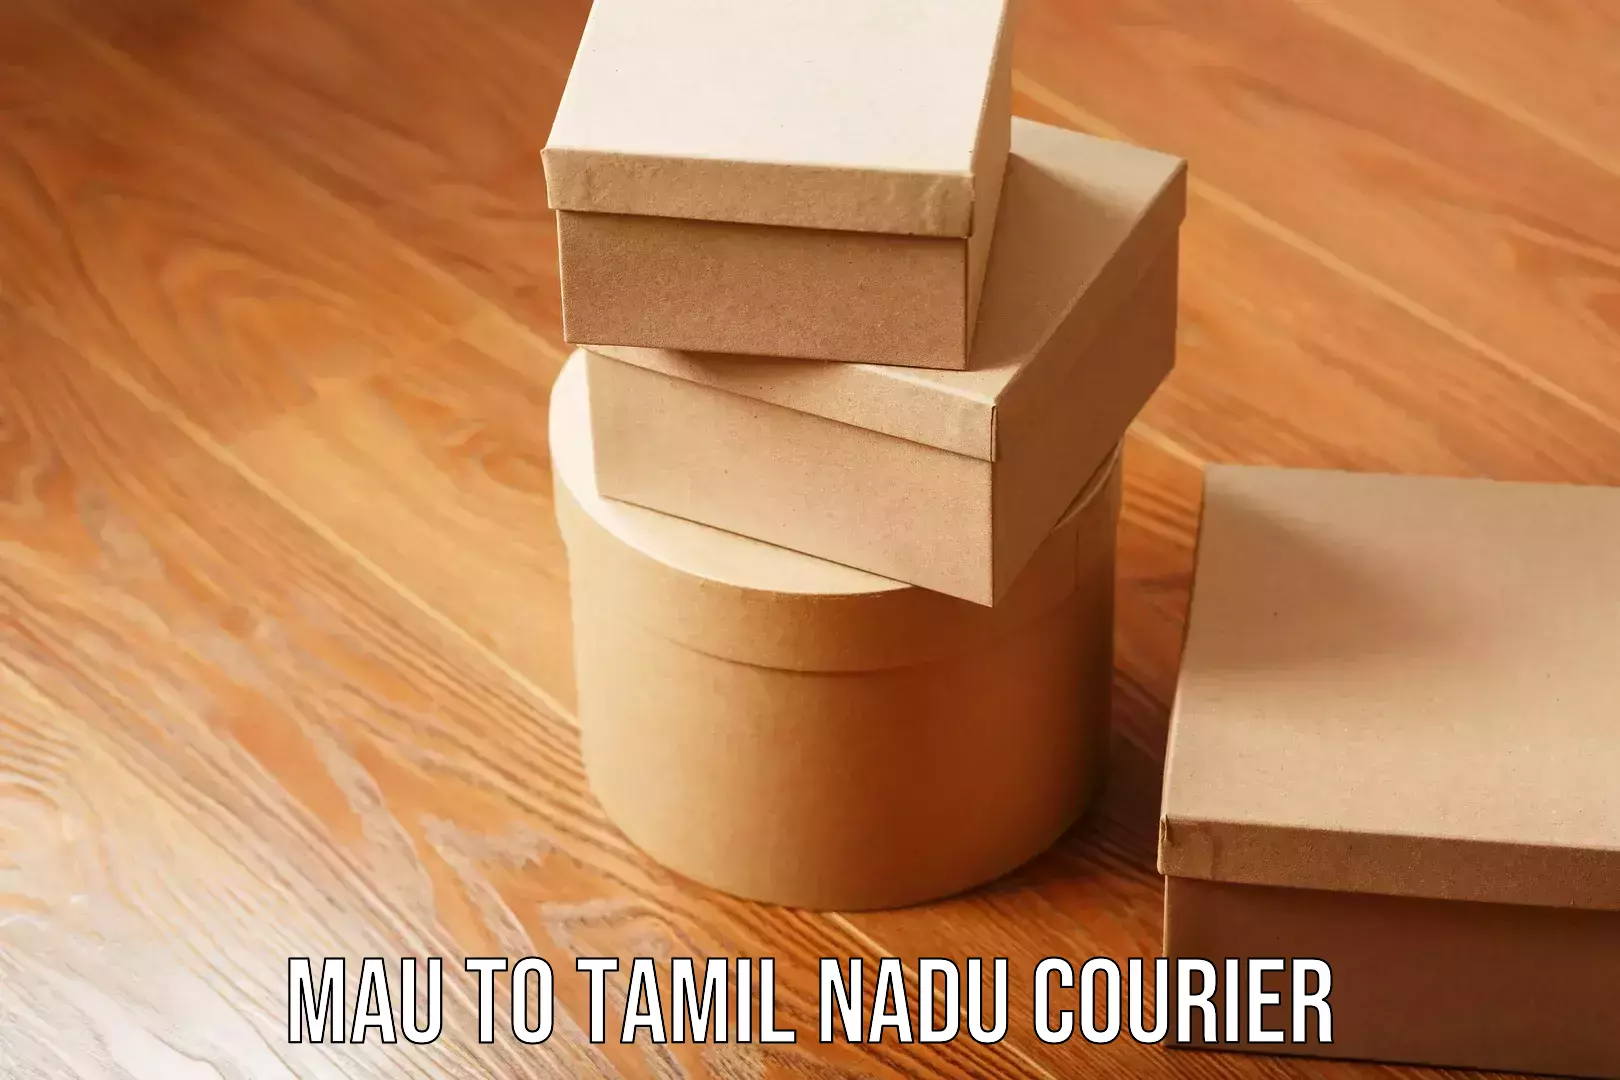 Furniture transport and logistics Mau to Tamil Nadu